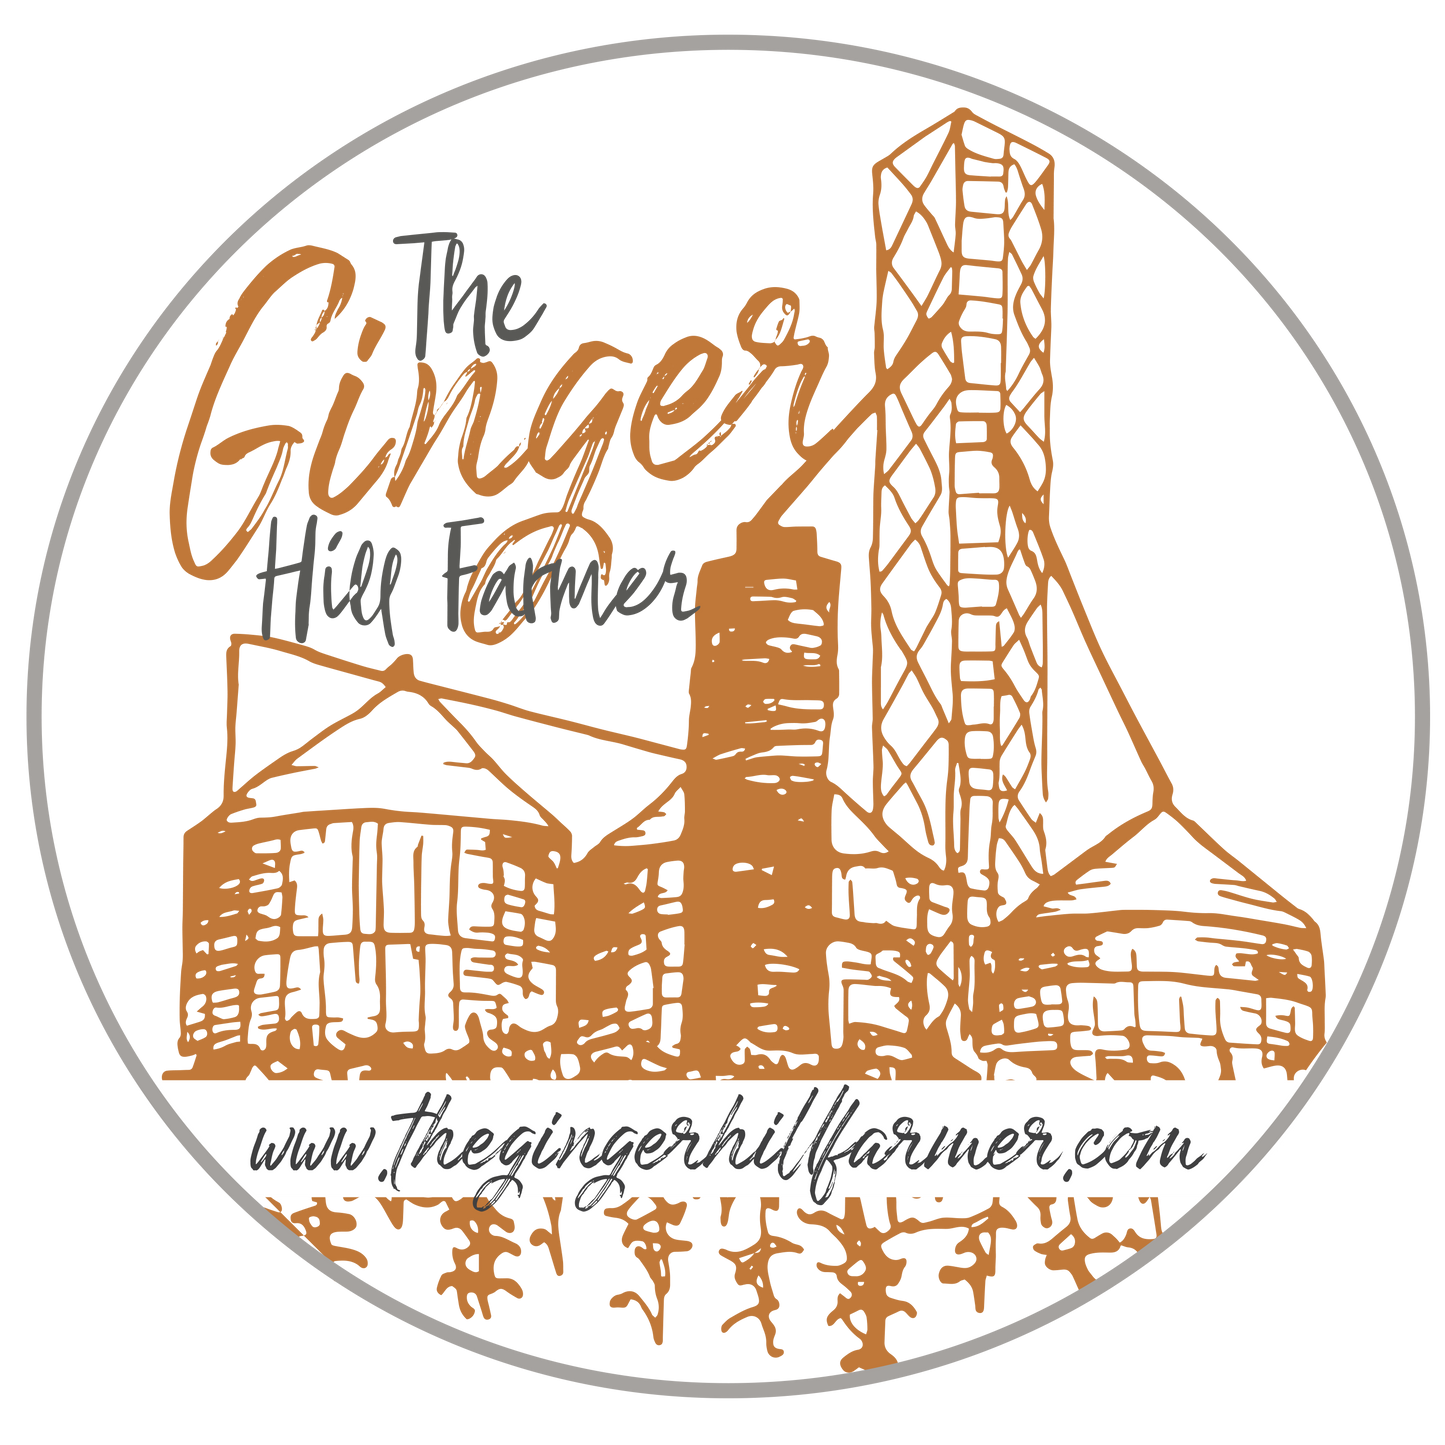 The Ginger Hill Farmer logo, gift card